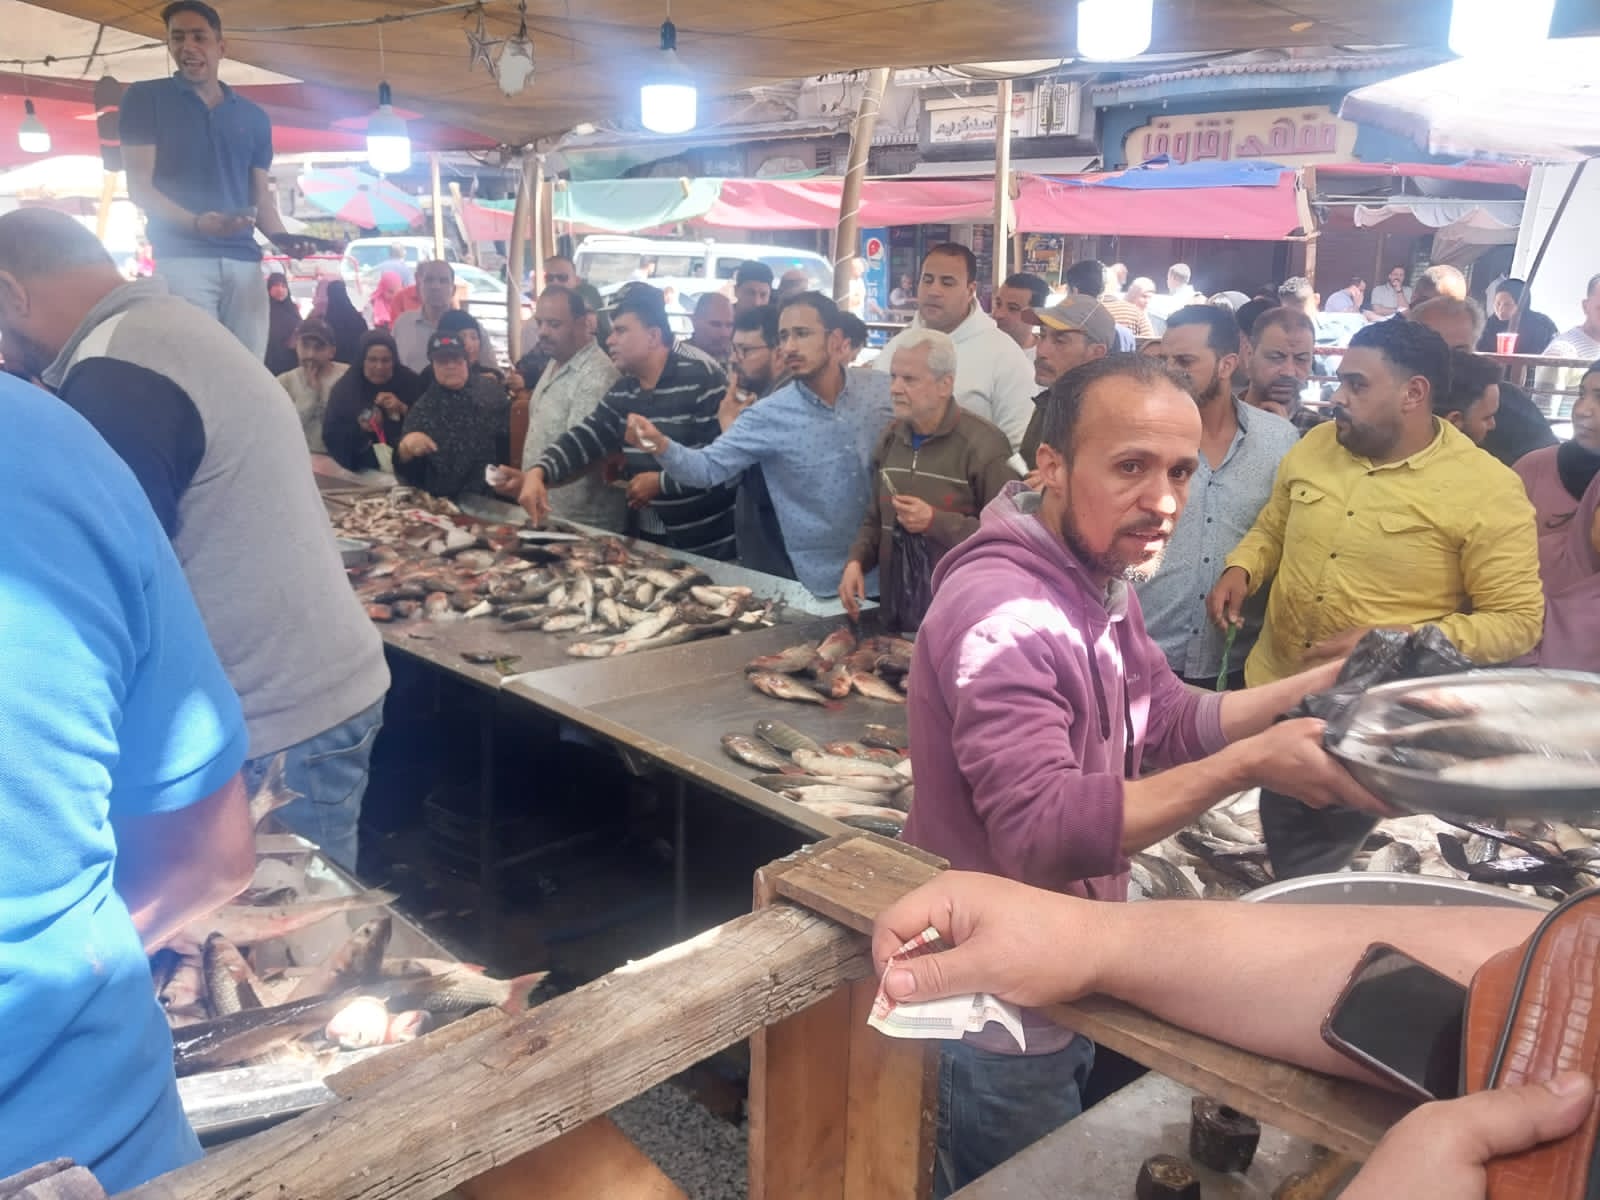 اقبال المواطنين على شراء الأسماك بأسواق دمياط